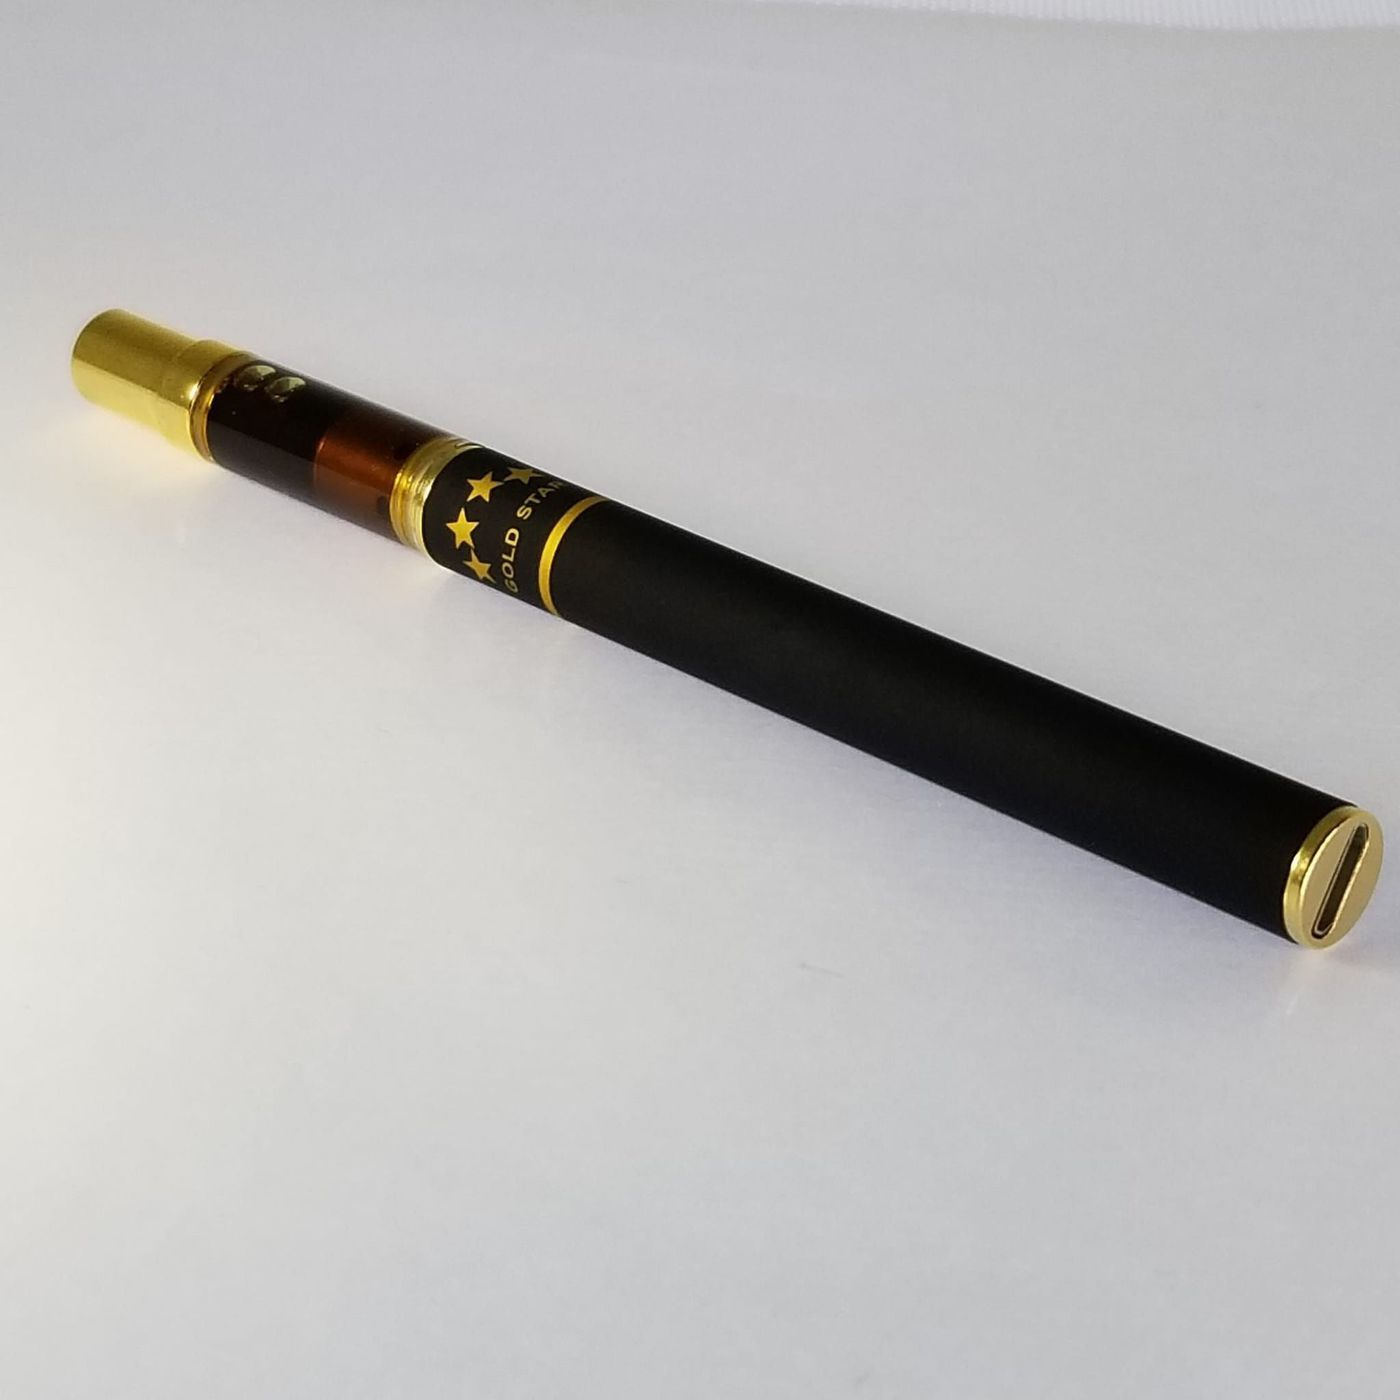 Gold Star Rosin - Disposable Vape Pen - Pink Gelato 0.3g